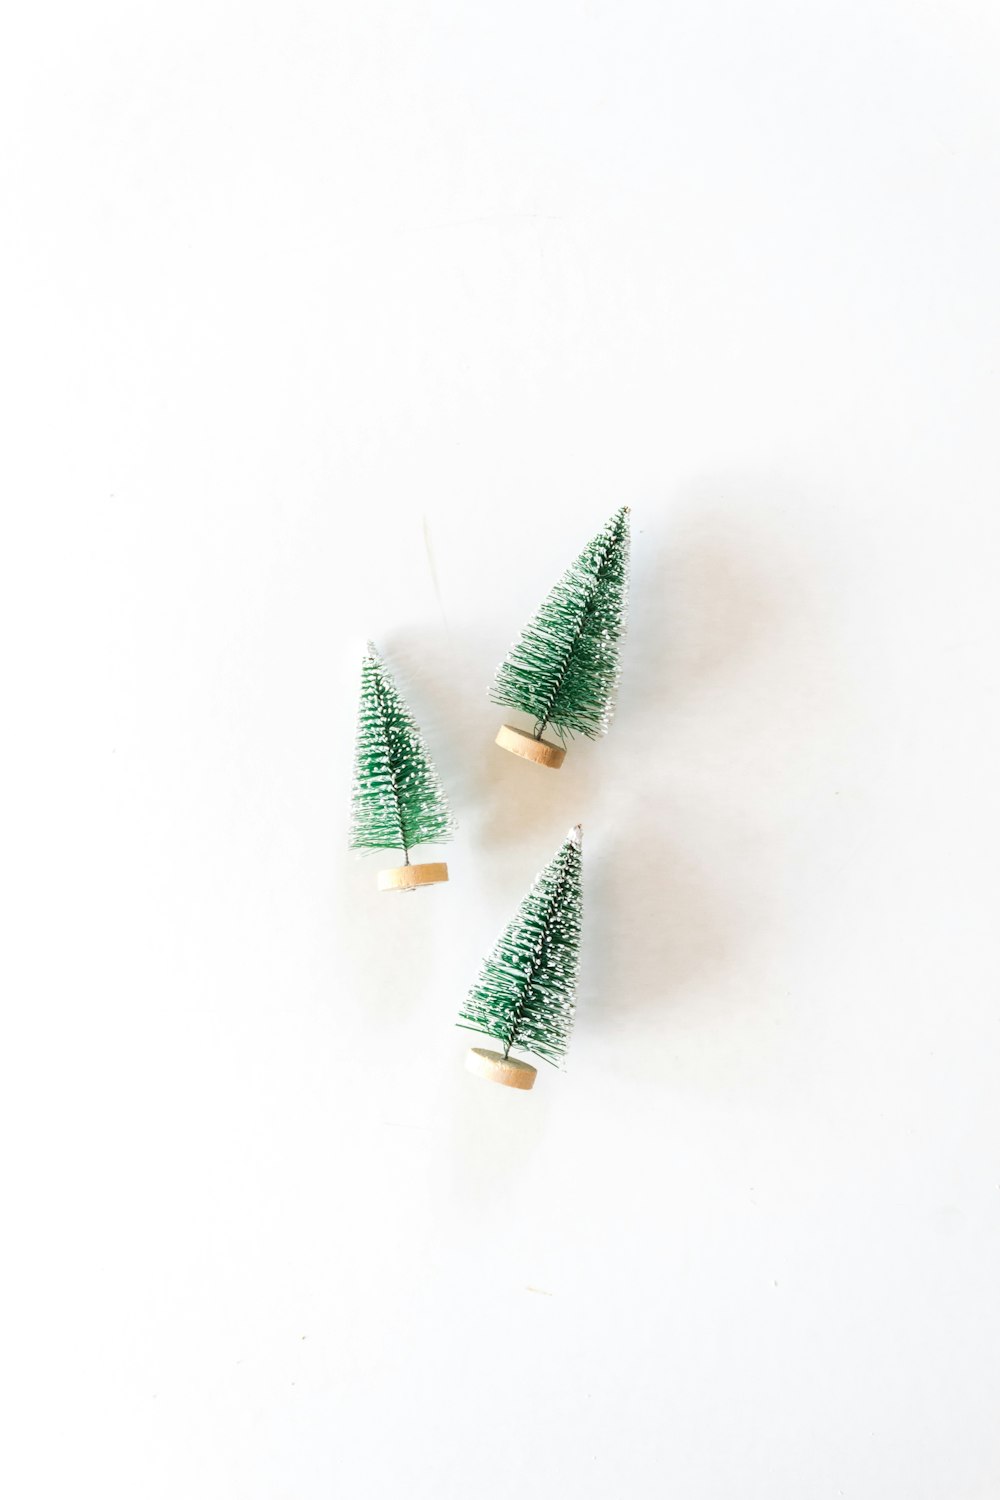 três miniaturas de pinheiro na superfície branca